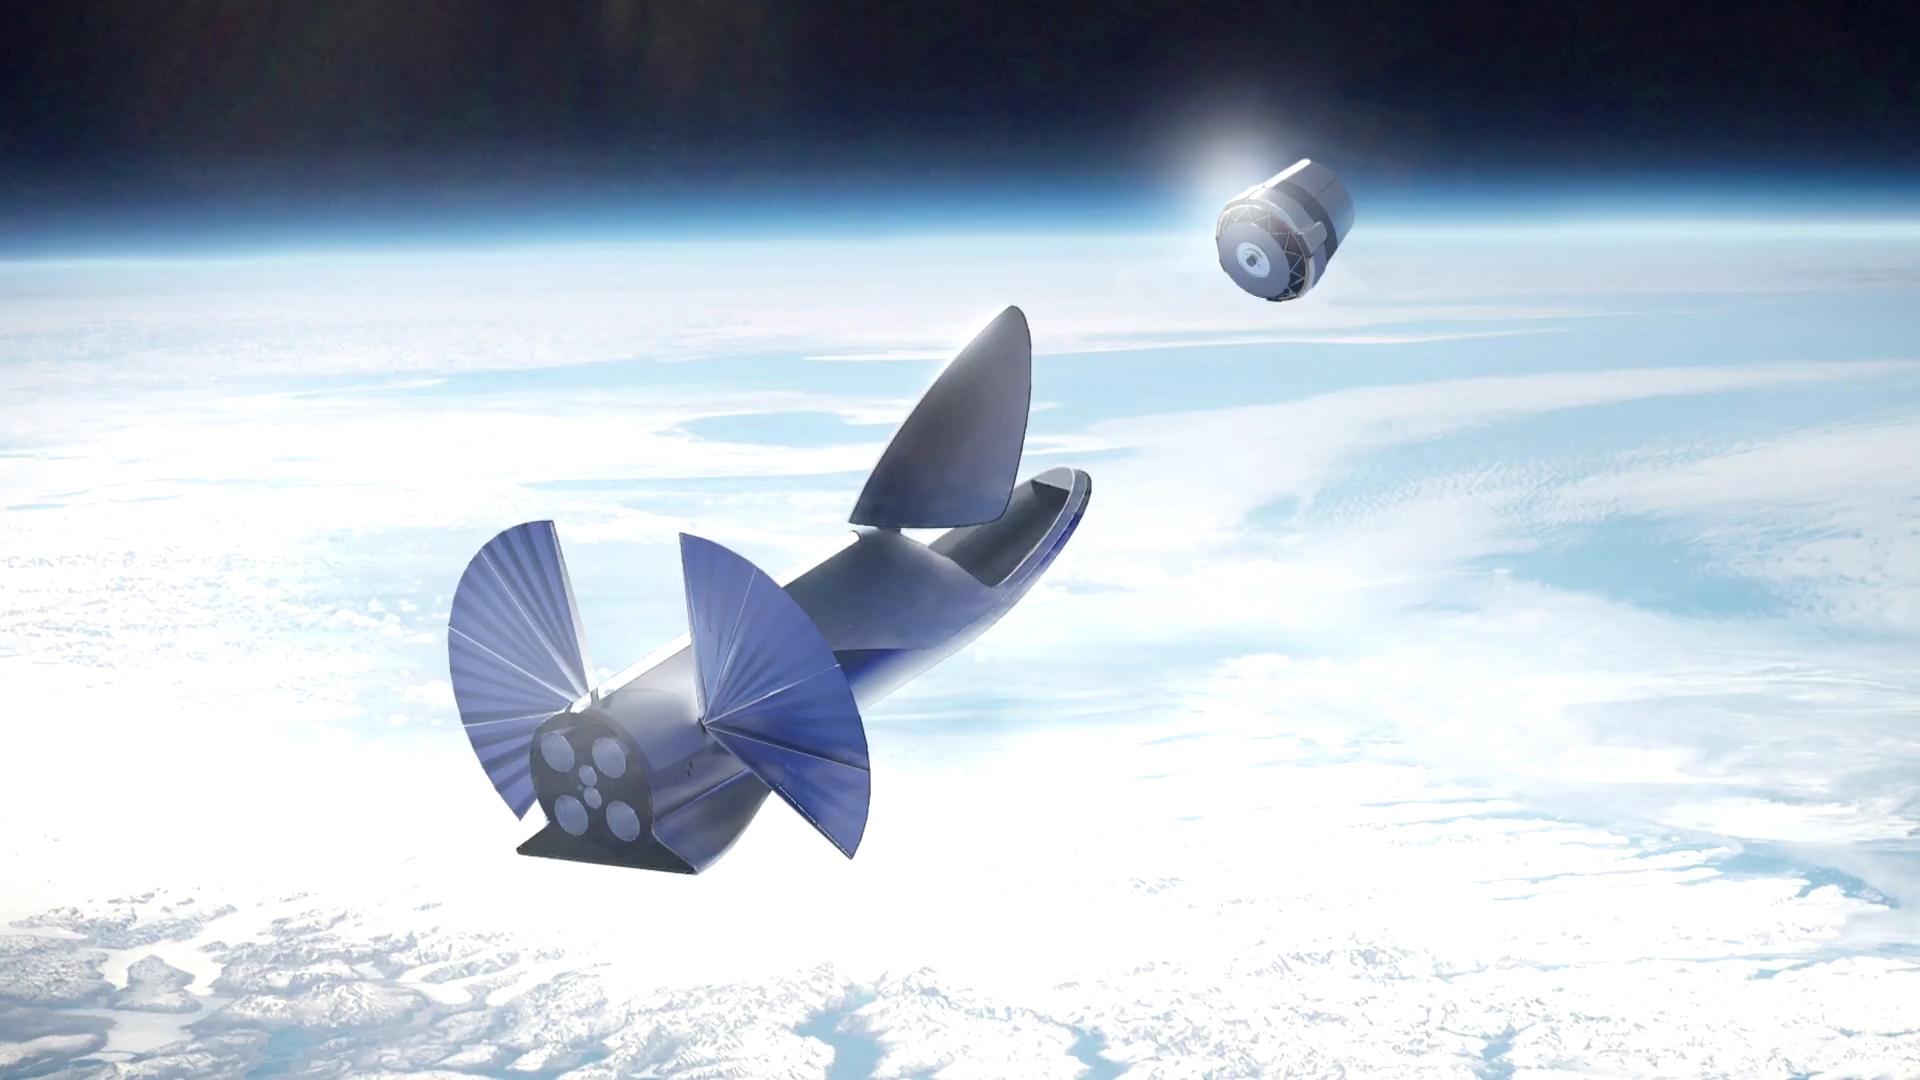 BFR ma mieć wielorakie zastosowania w przestrzeni okołoziemskiej: od umieszczania wielkich i małych satelitów na orbicie, przez obsługę ISS, a nawet sprzątanie kosmicznych śmieci.